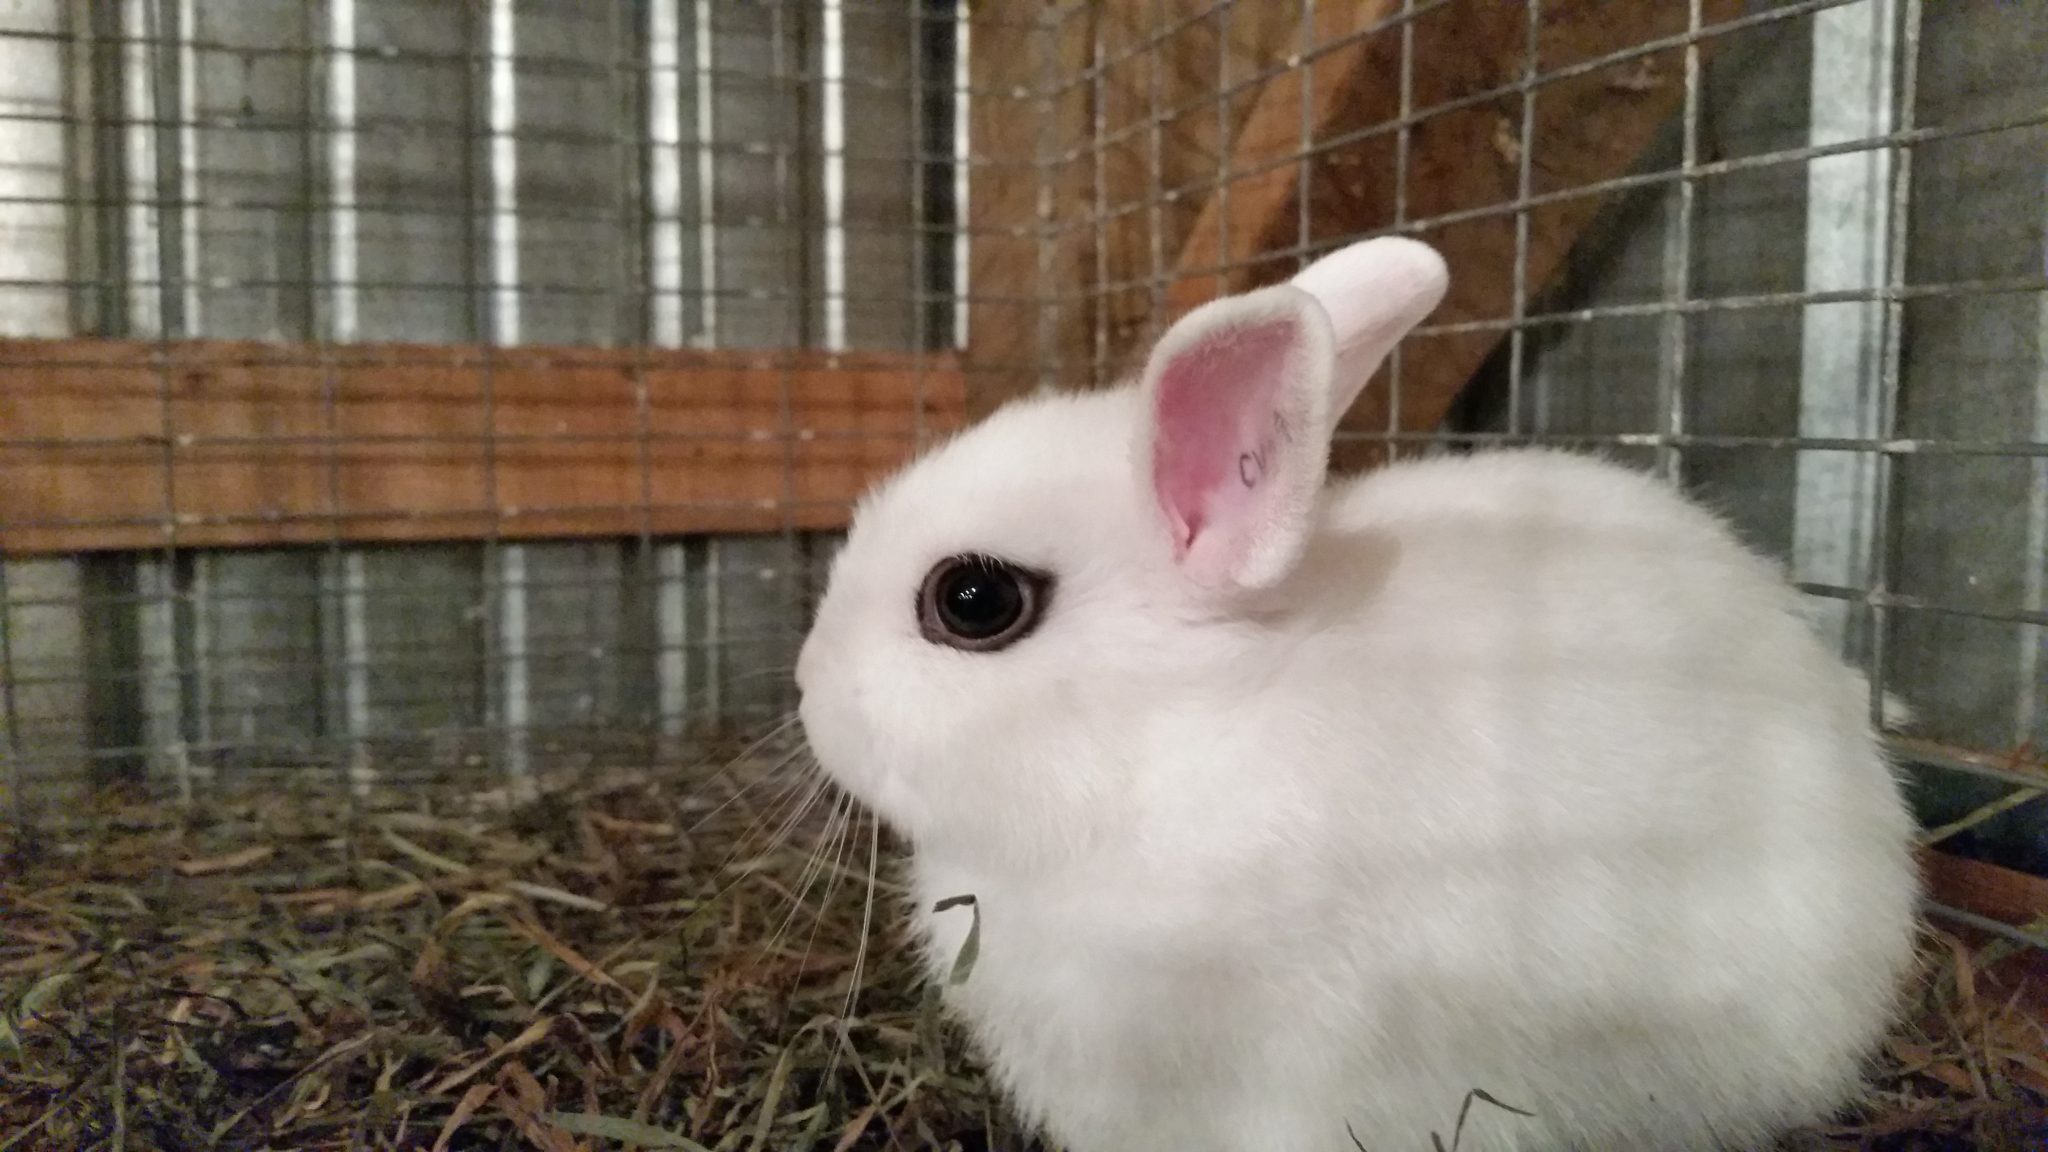 Little white bunny